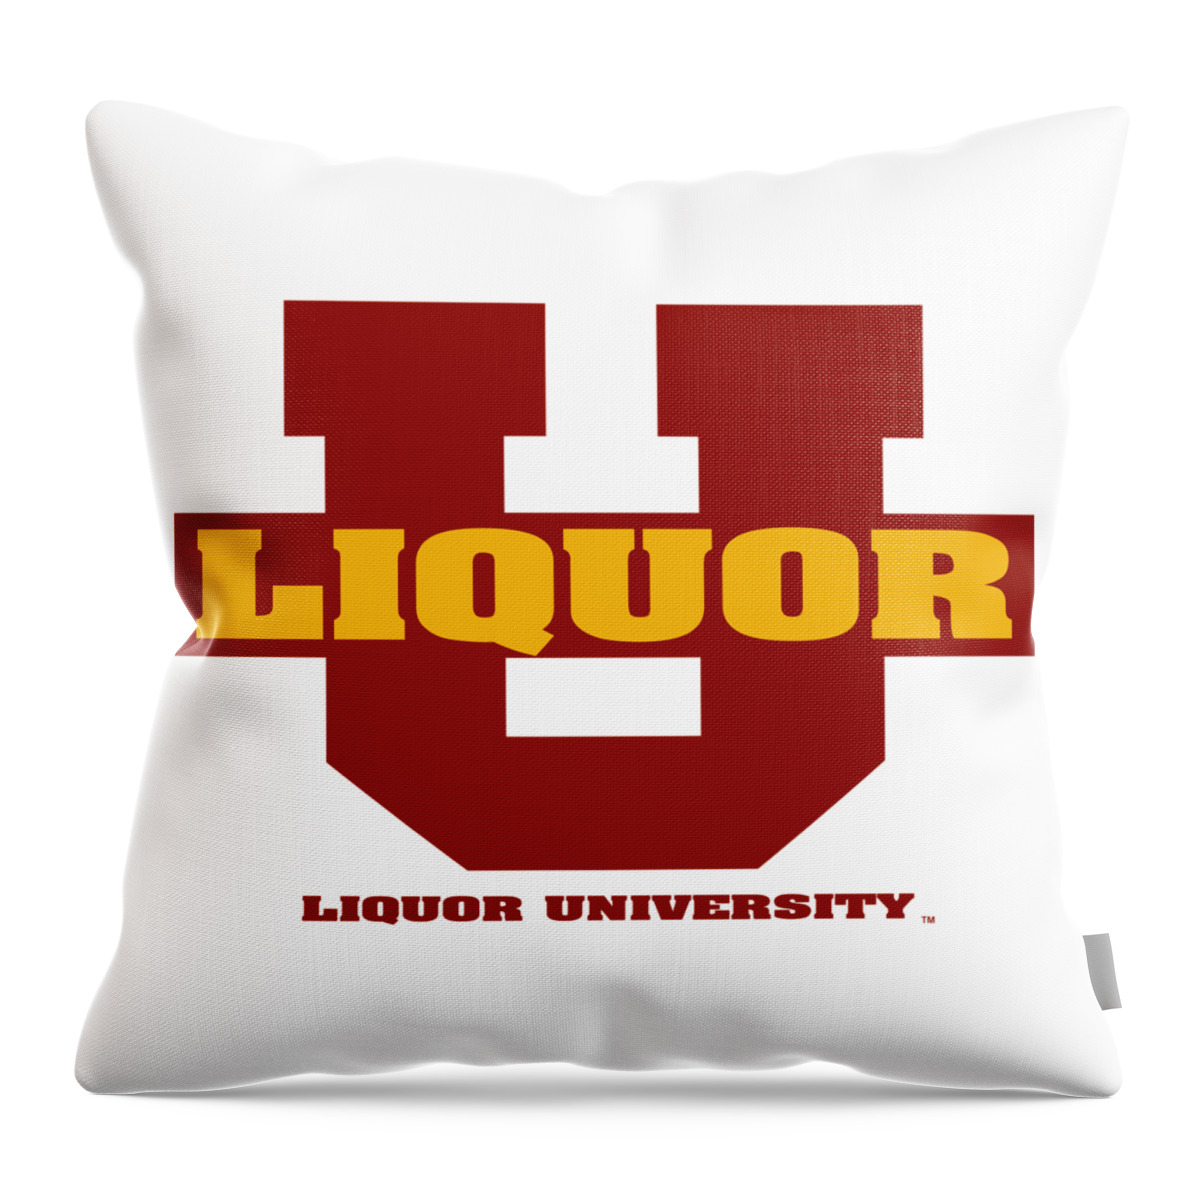 Liquor U Throw Pillow featuring the digital art Liquor U by DB Artist